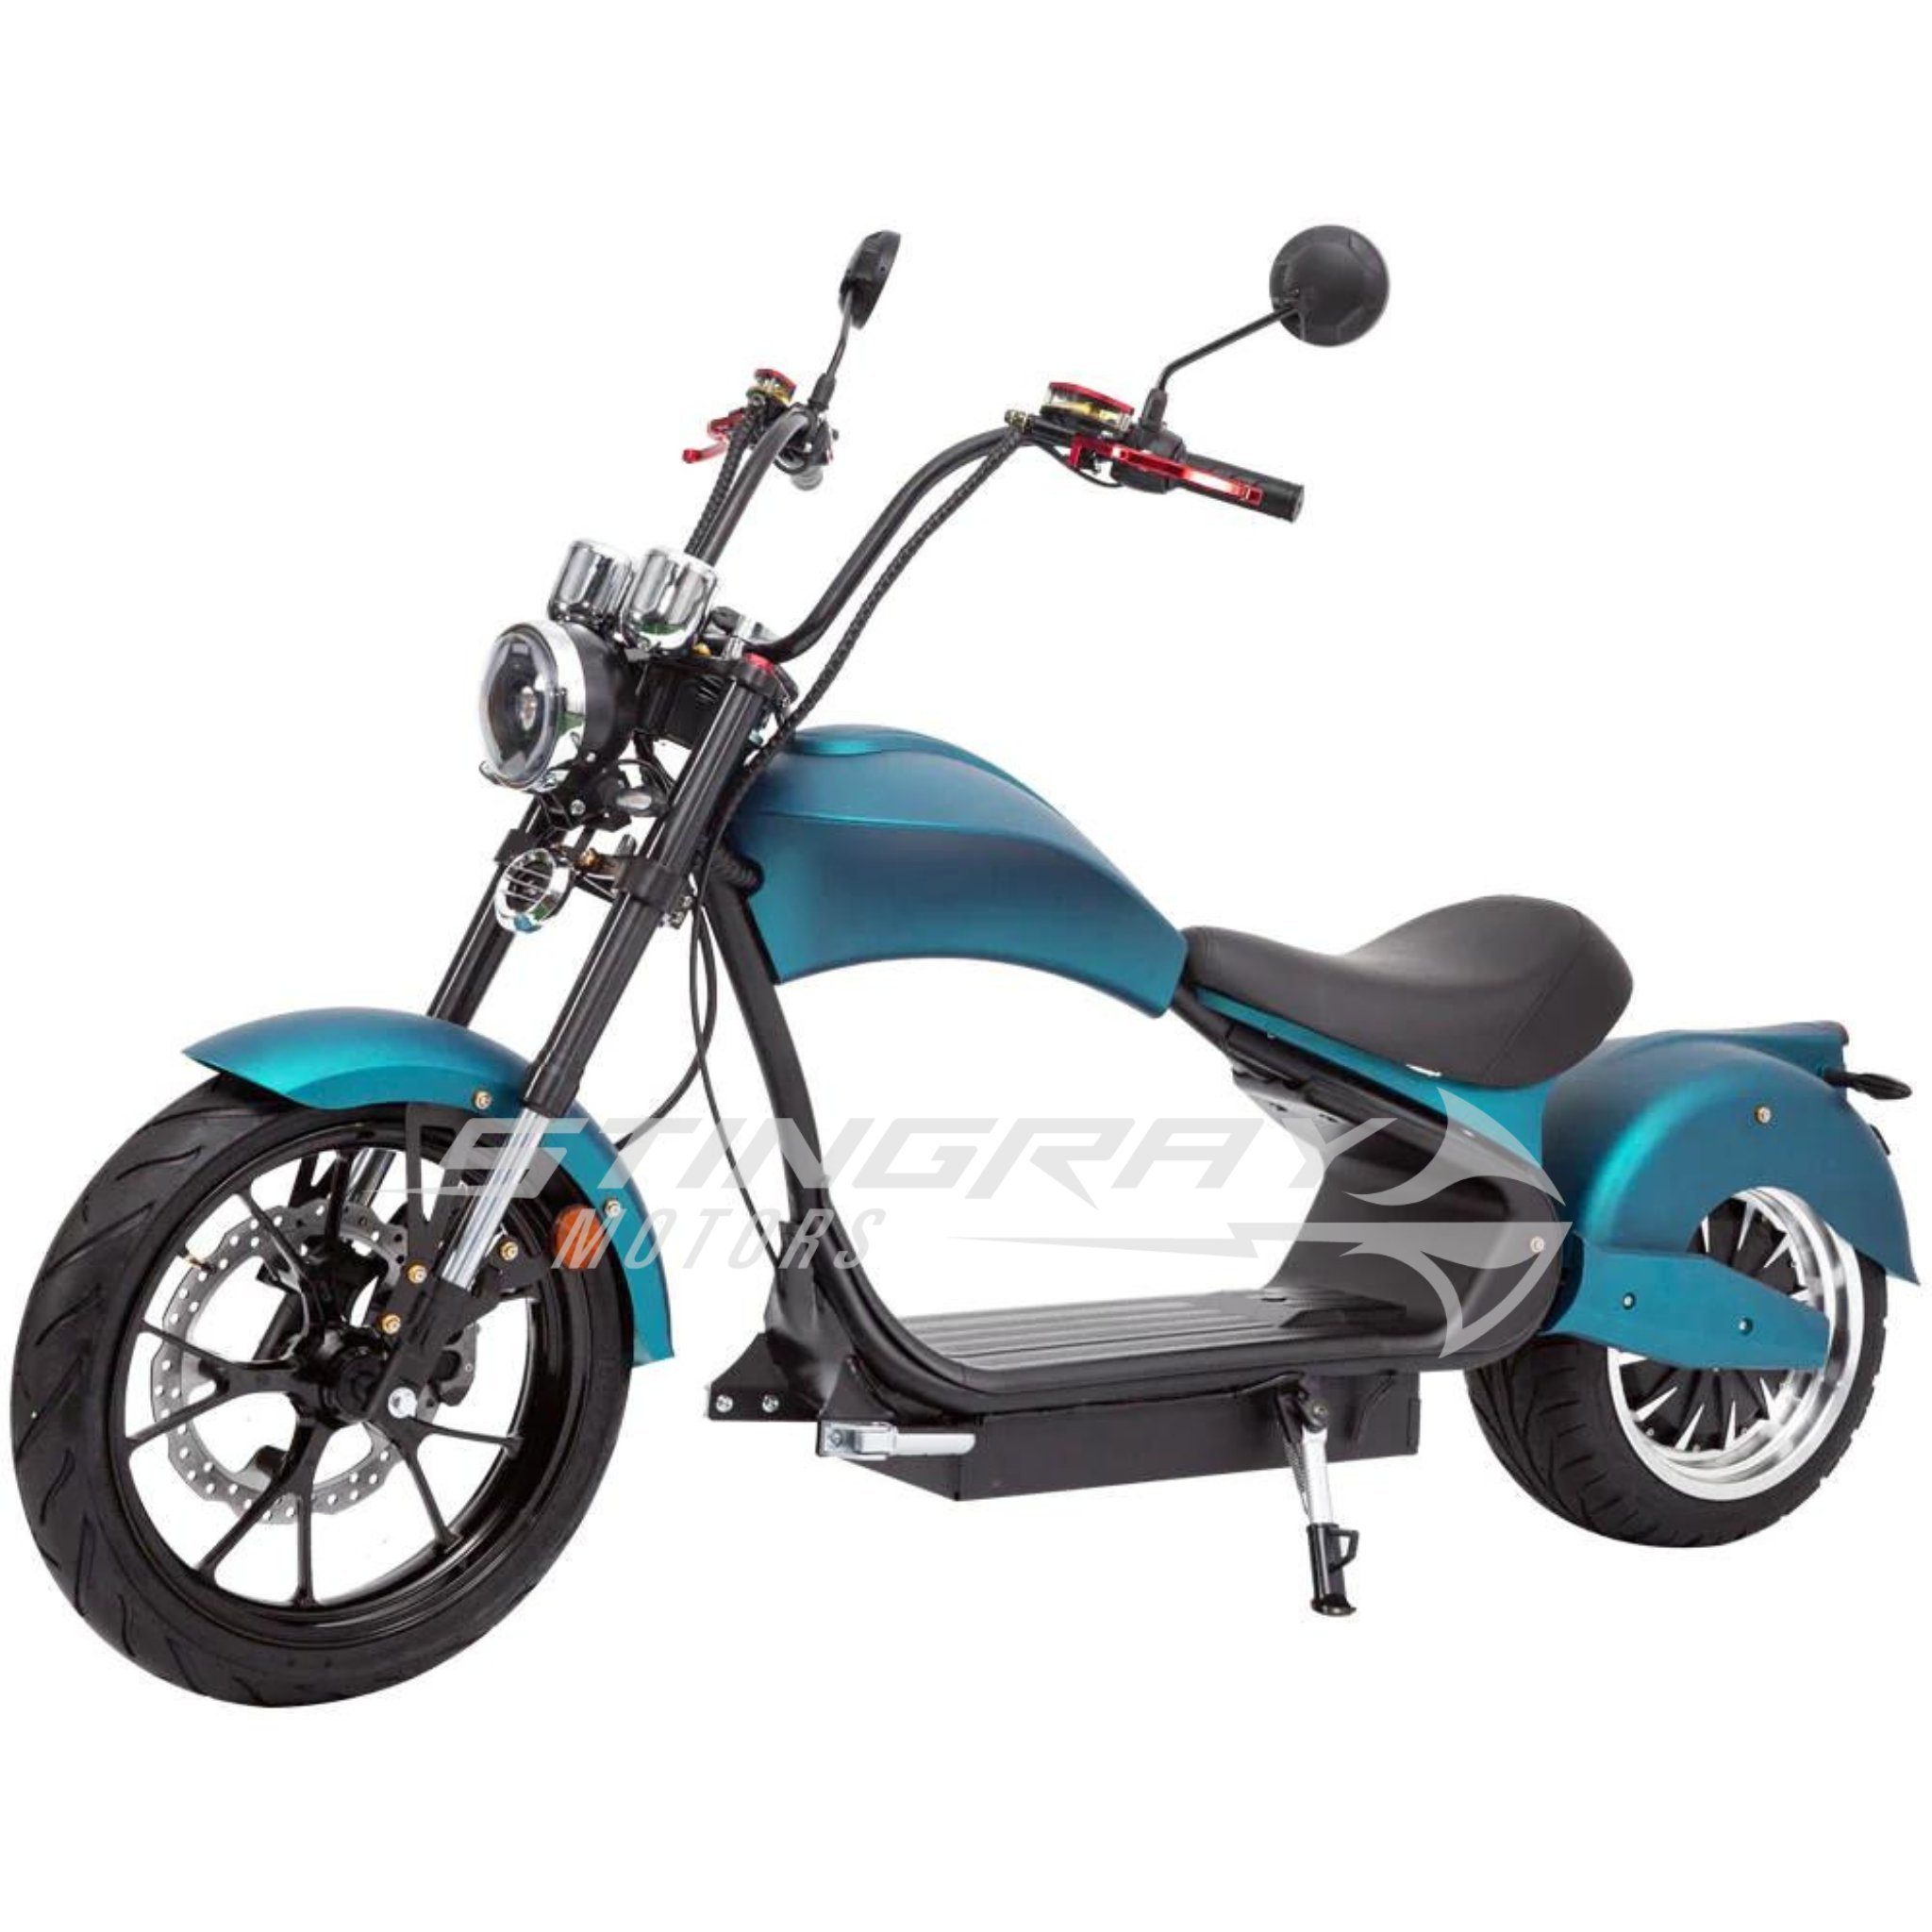 Stingray Motors E-Motorroller Chopper 50 E 50 Elektroroller 4500 Watt Carbon km/h MH3, - Roller 4500,00 km/h - - Harley W